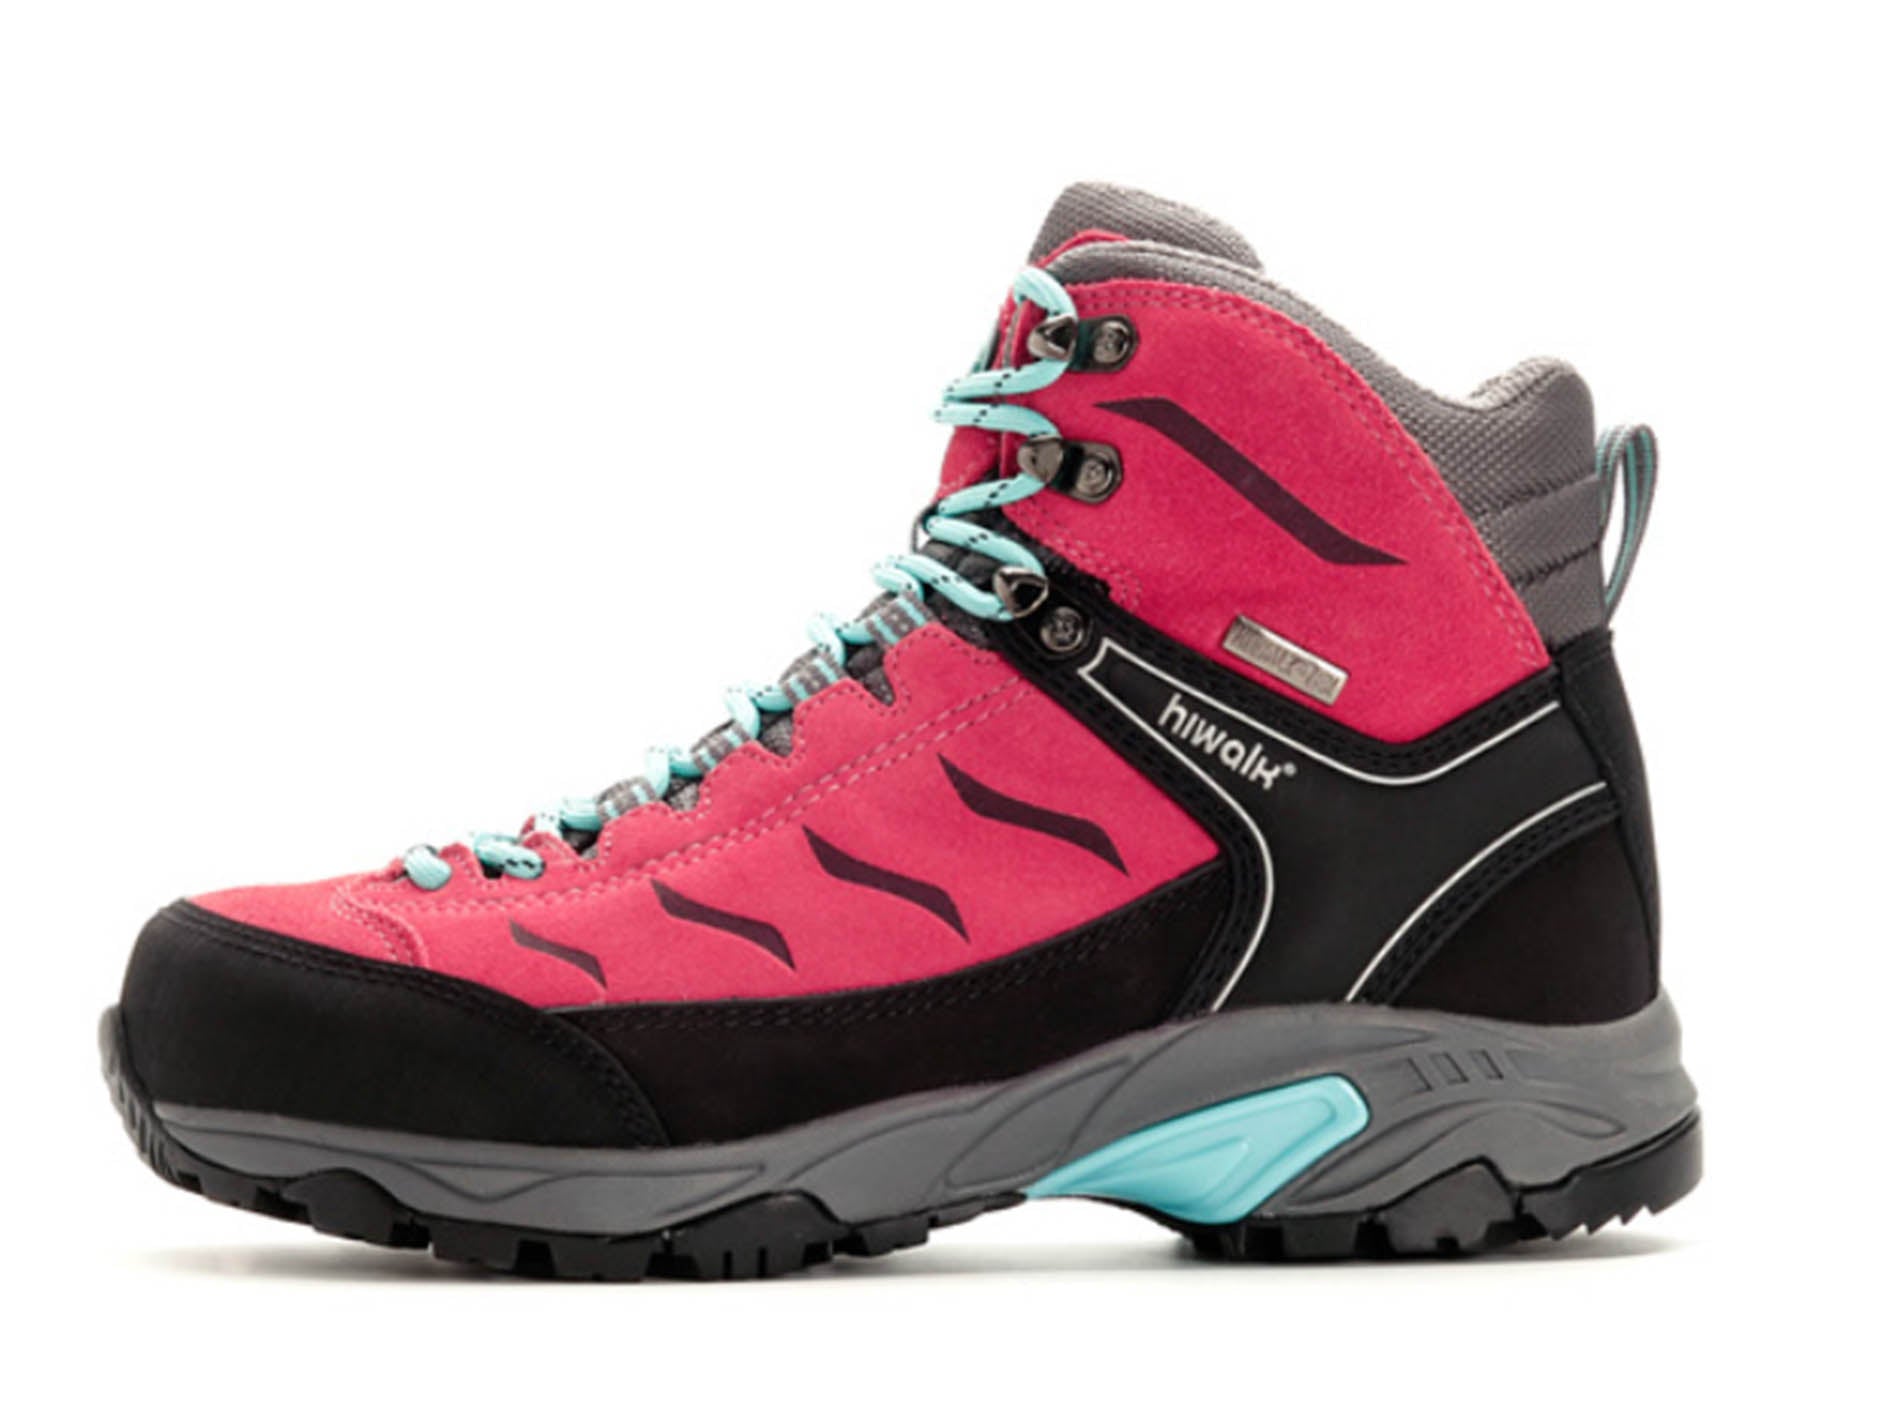 Women's Flowey Waterproof Hiking Boots